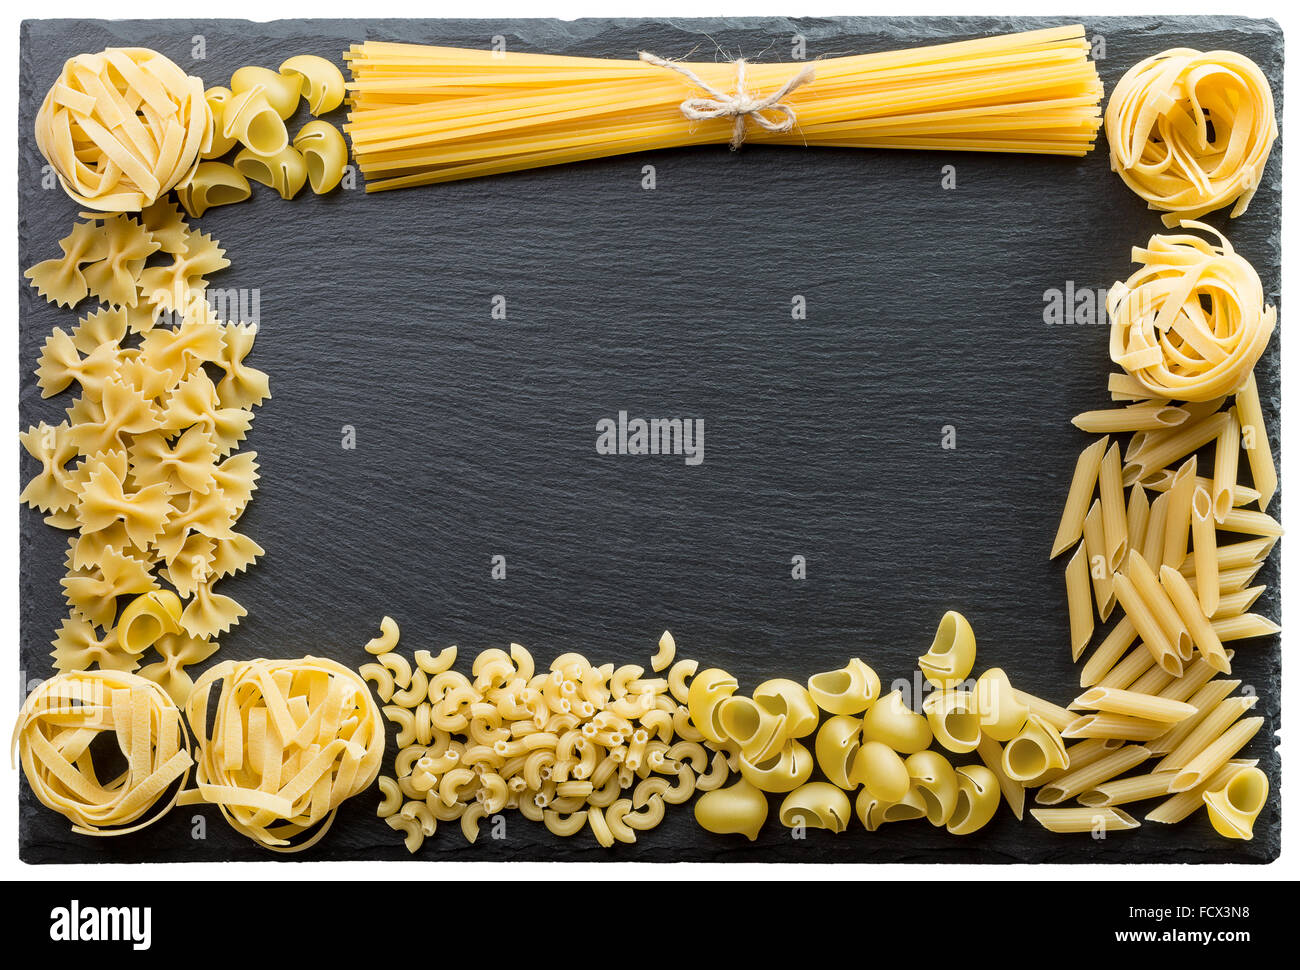 Pasta-Rahmen auf dem Schiefer Stand. Stockfoto